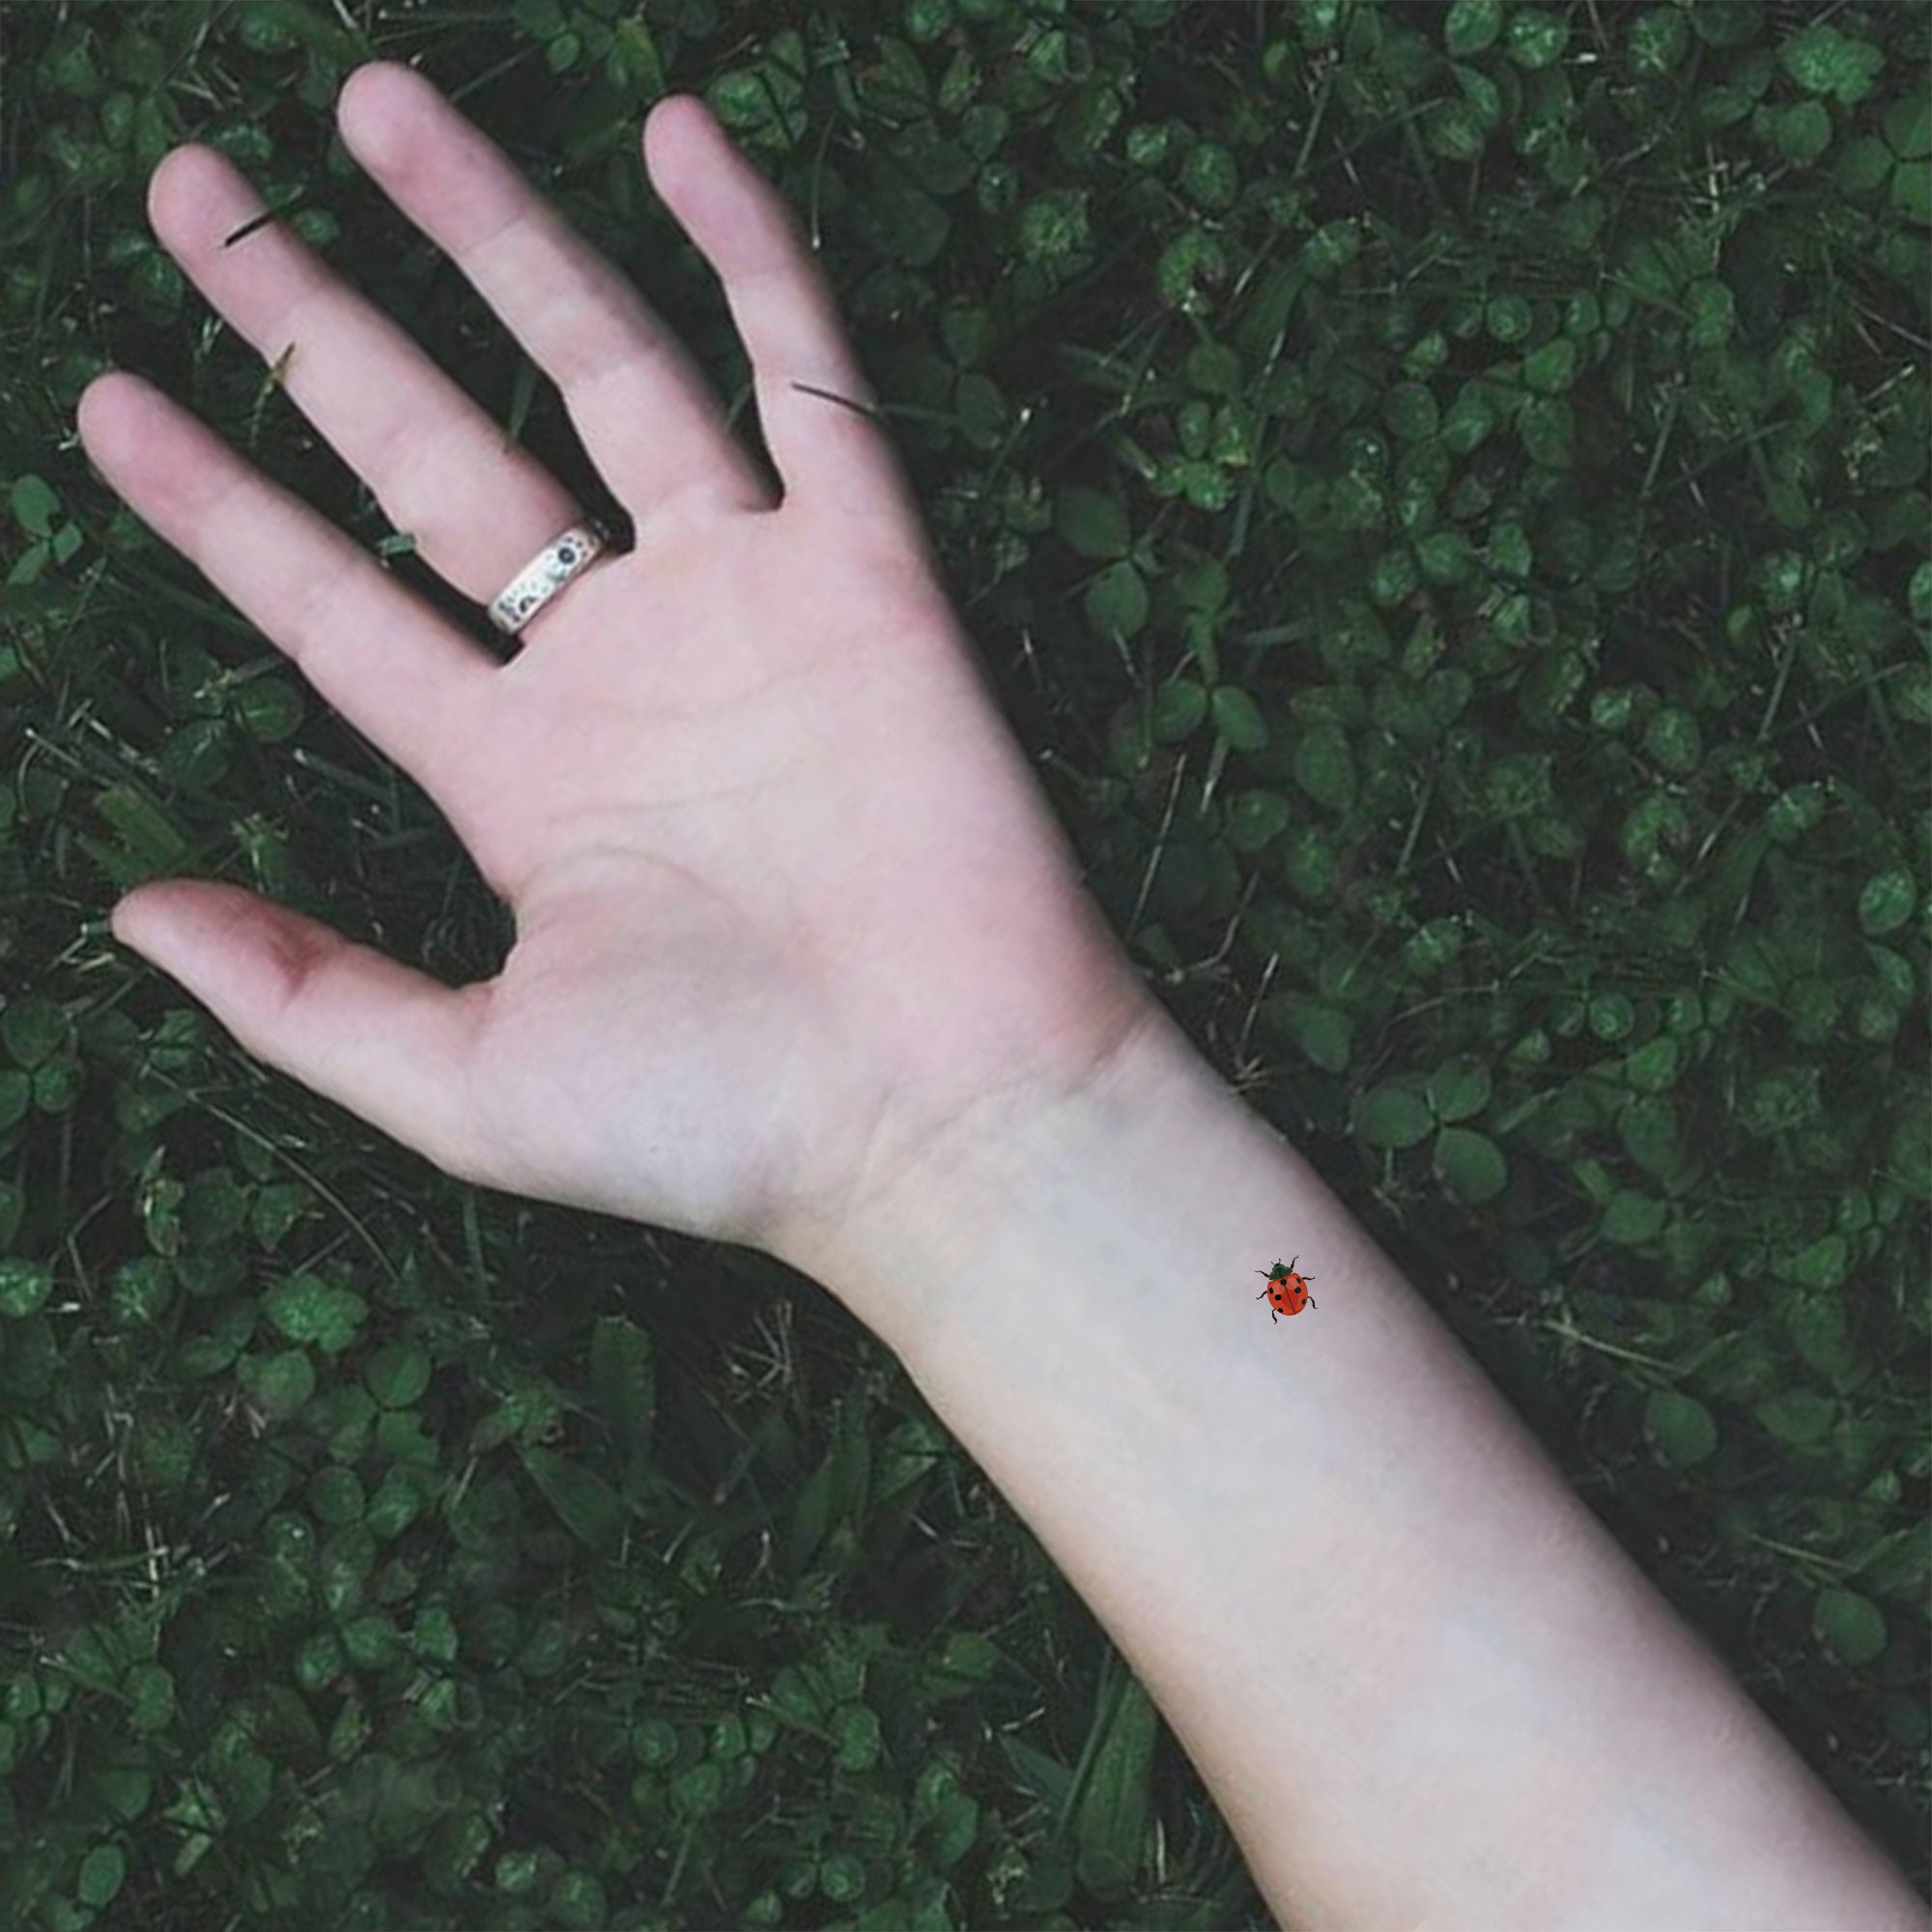 Small ladybug tattoo on the toe